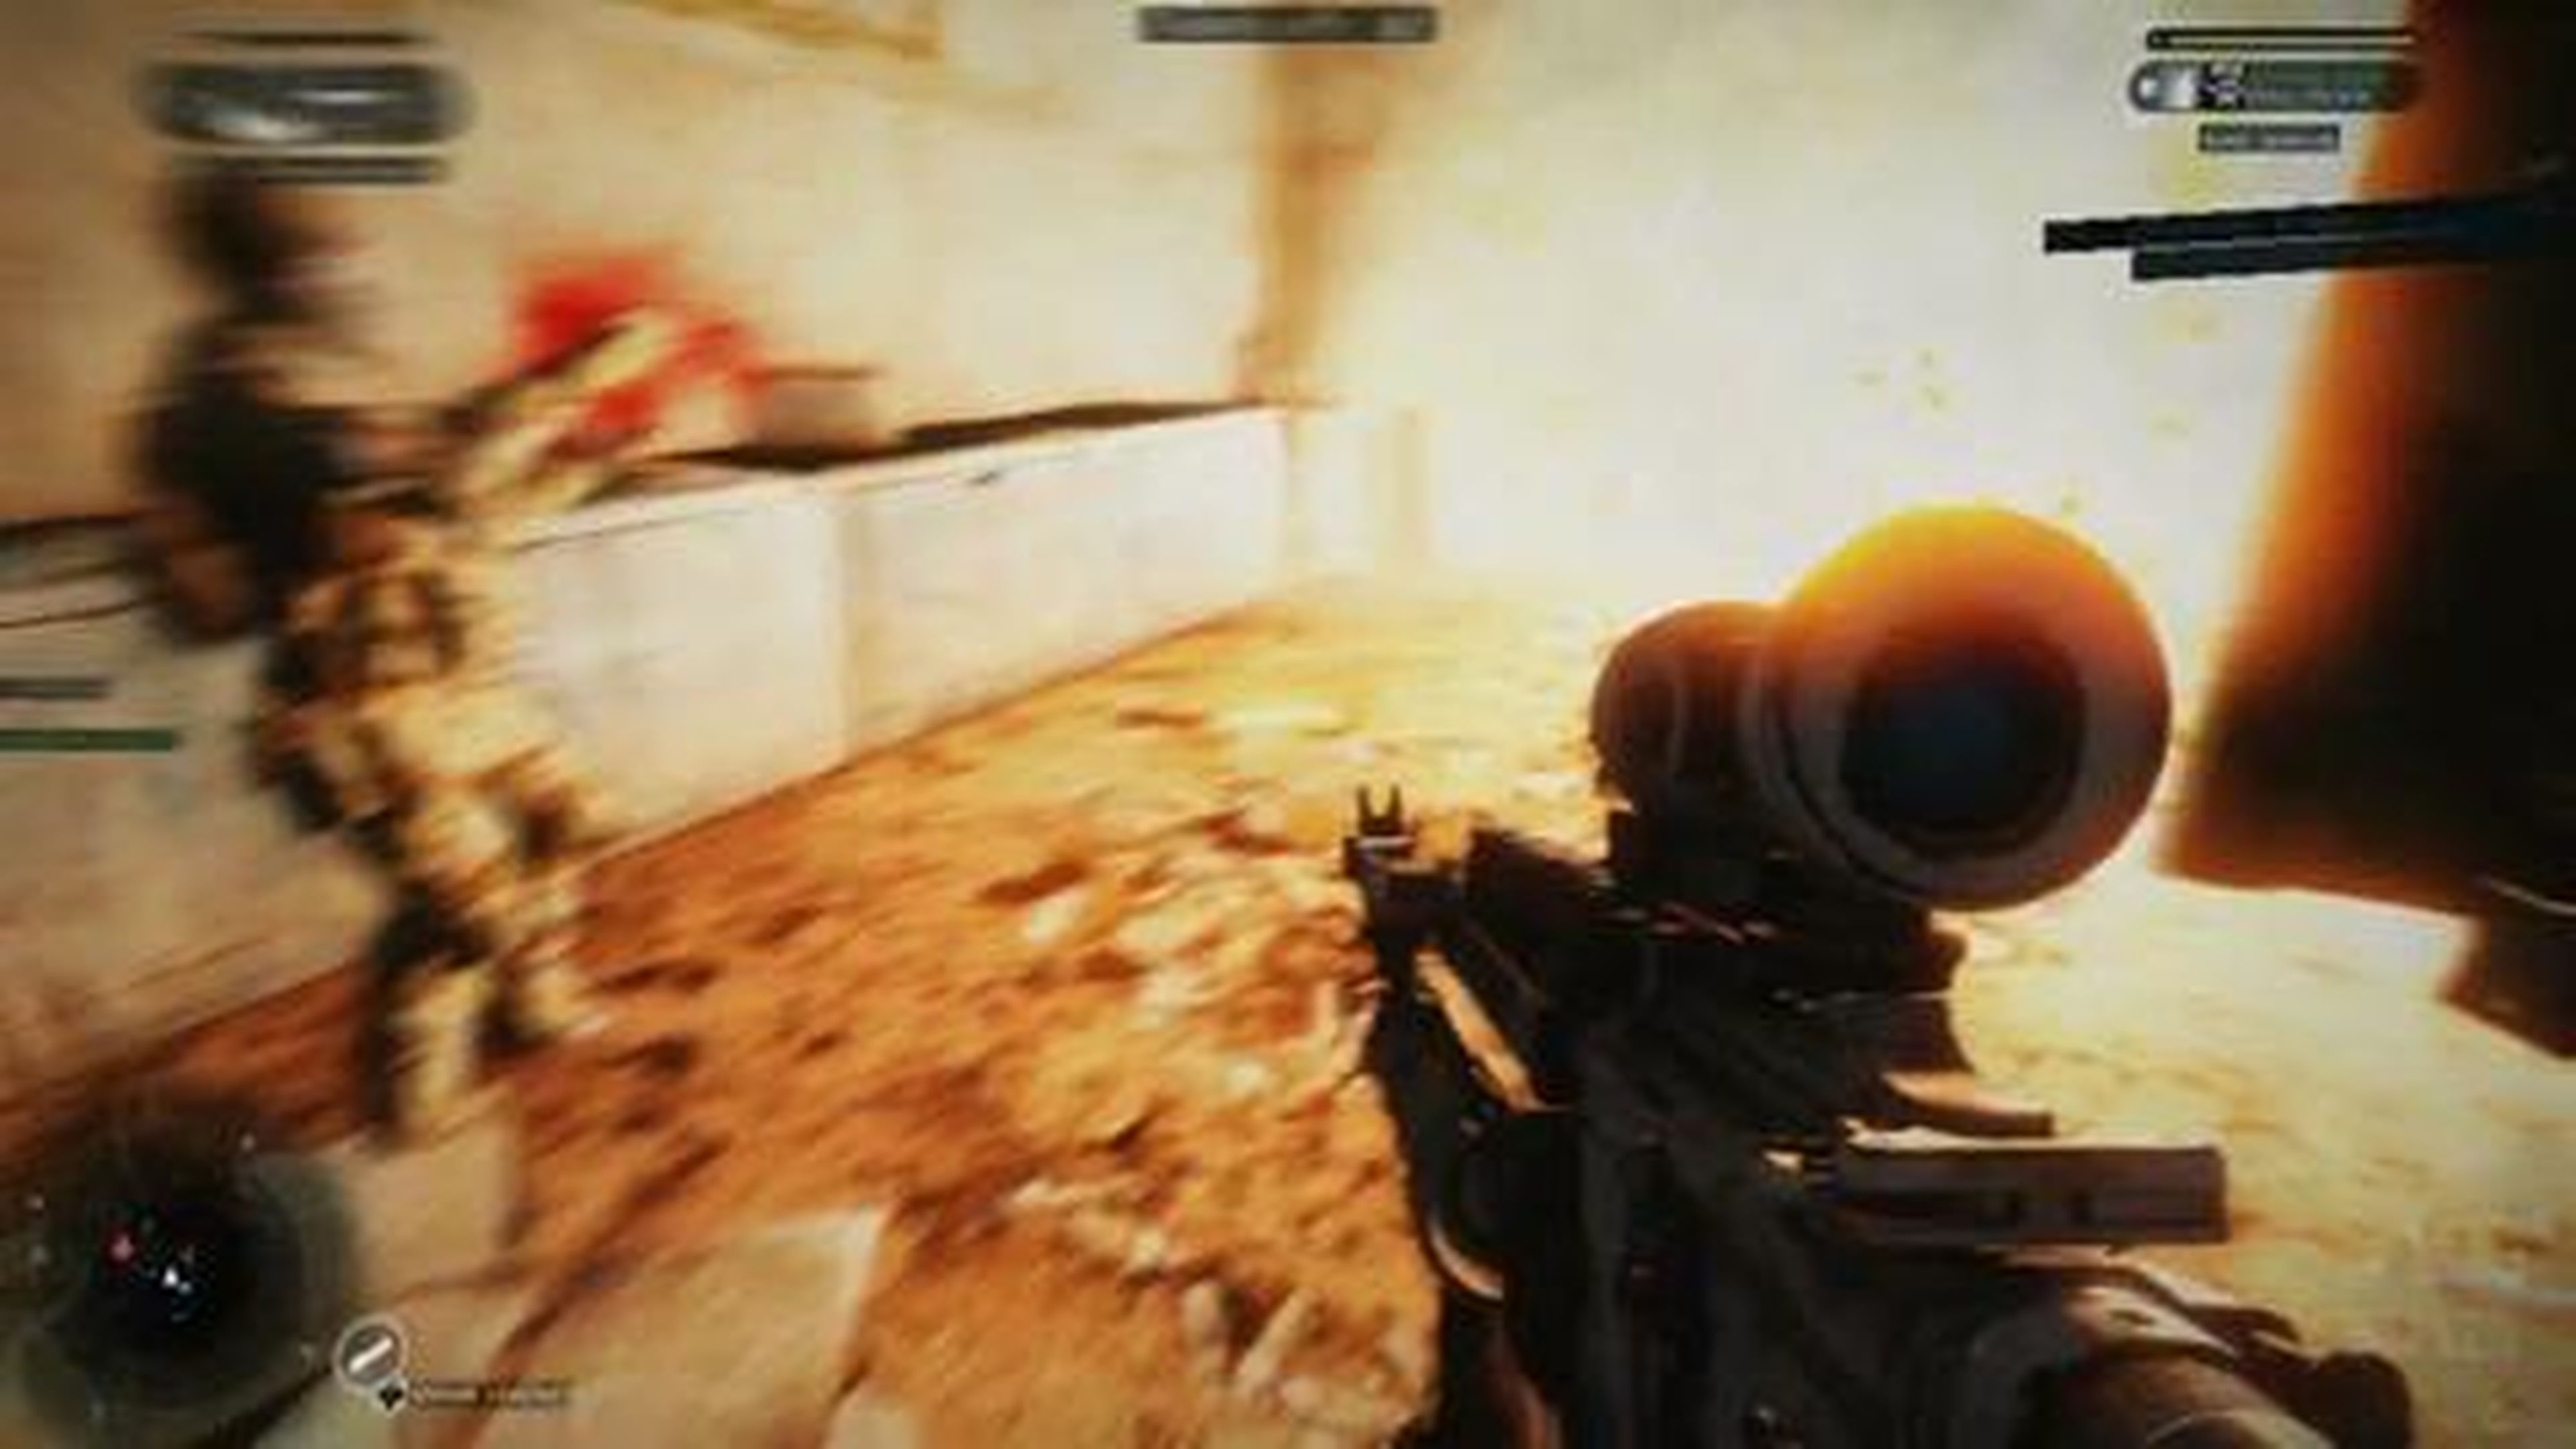 Medal of Honor Warfighter - Multiplayer Gameplay Trailer (HD) en HobbyNews.es